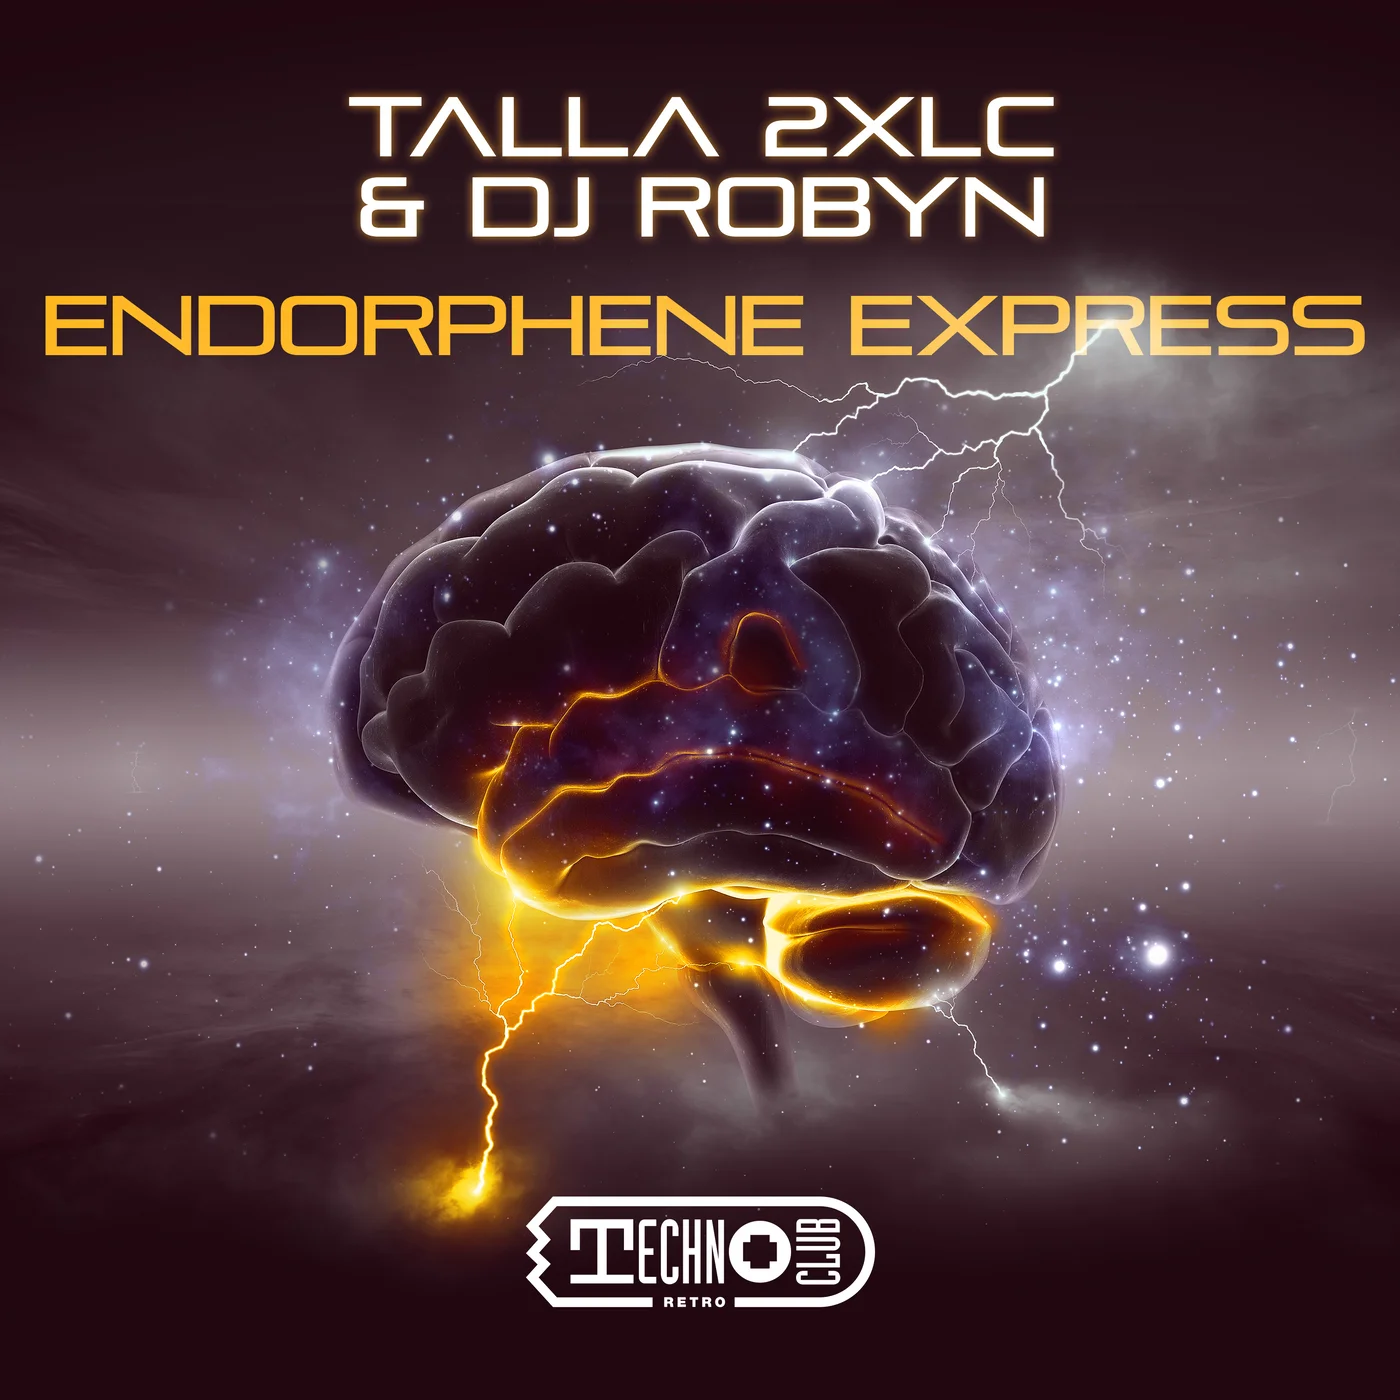 Talla 2Xlc & DJ Robyn - Endorphene Express (Extended Mix)